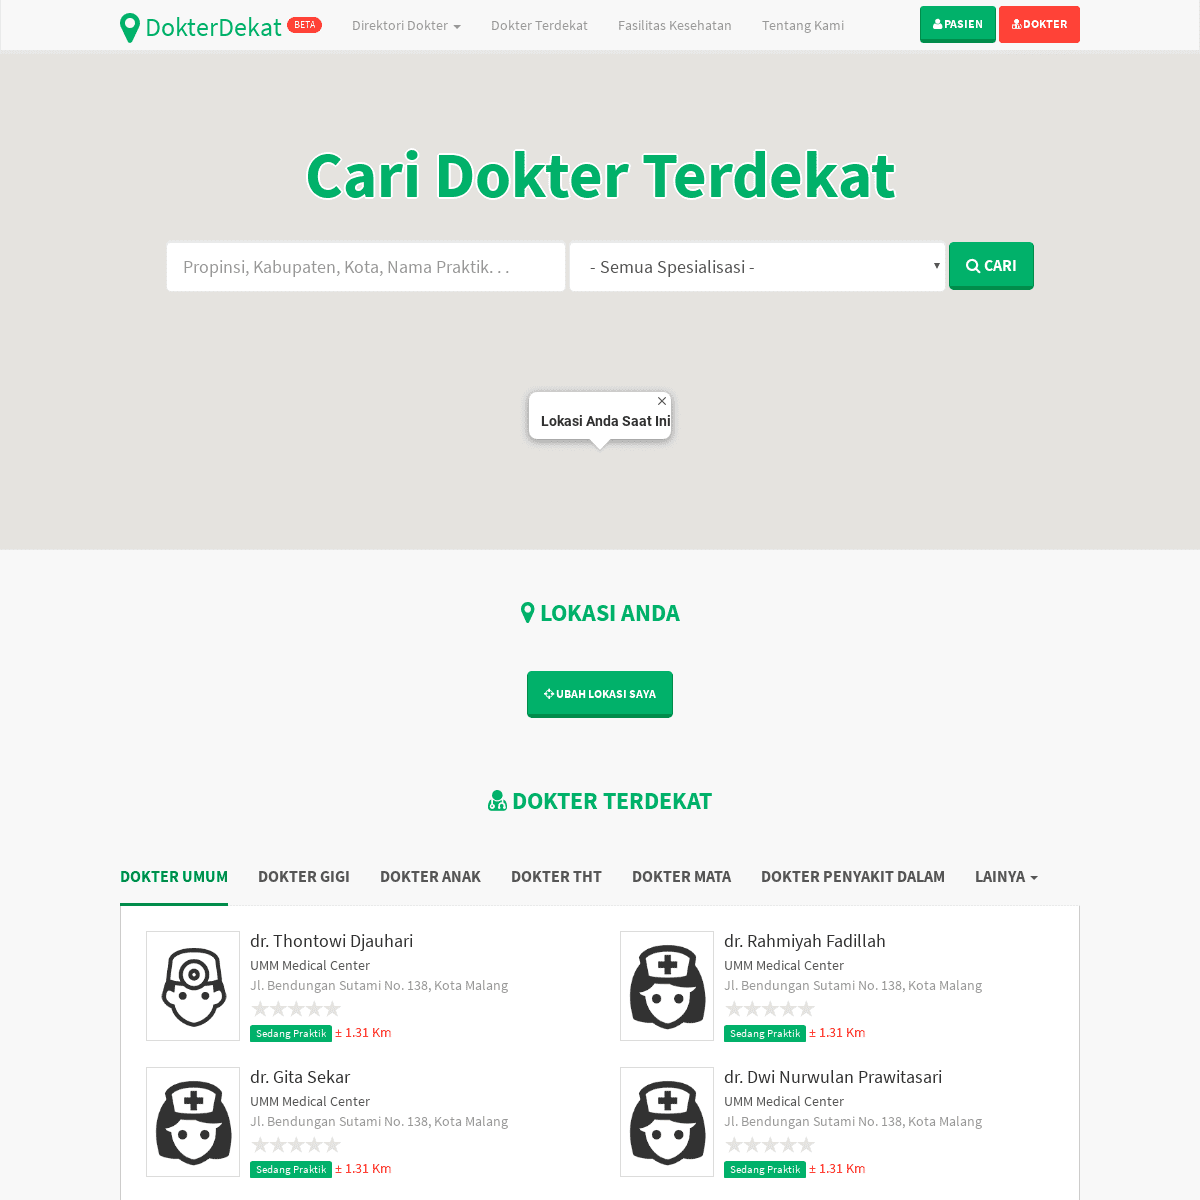 A complete backup of dokterdekat.com